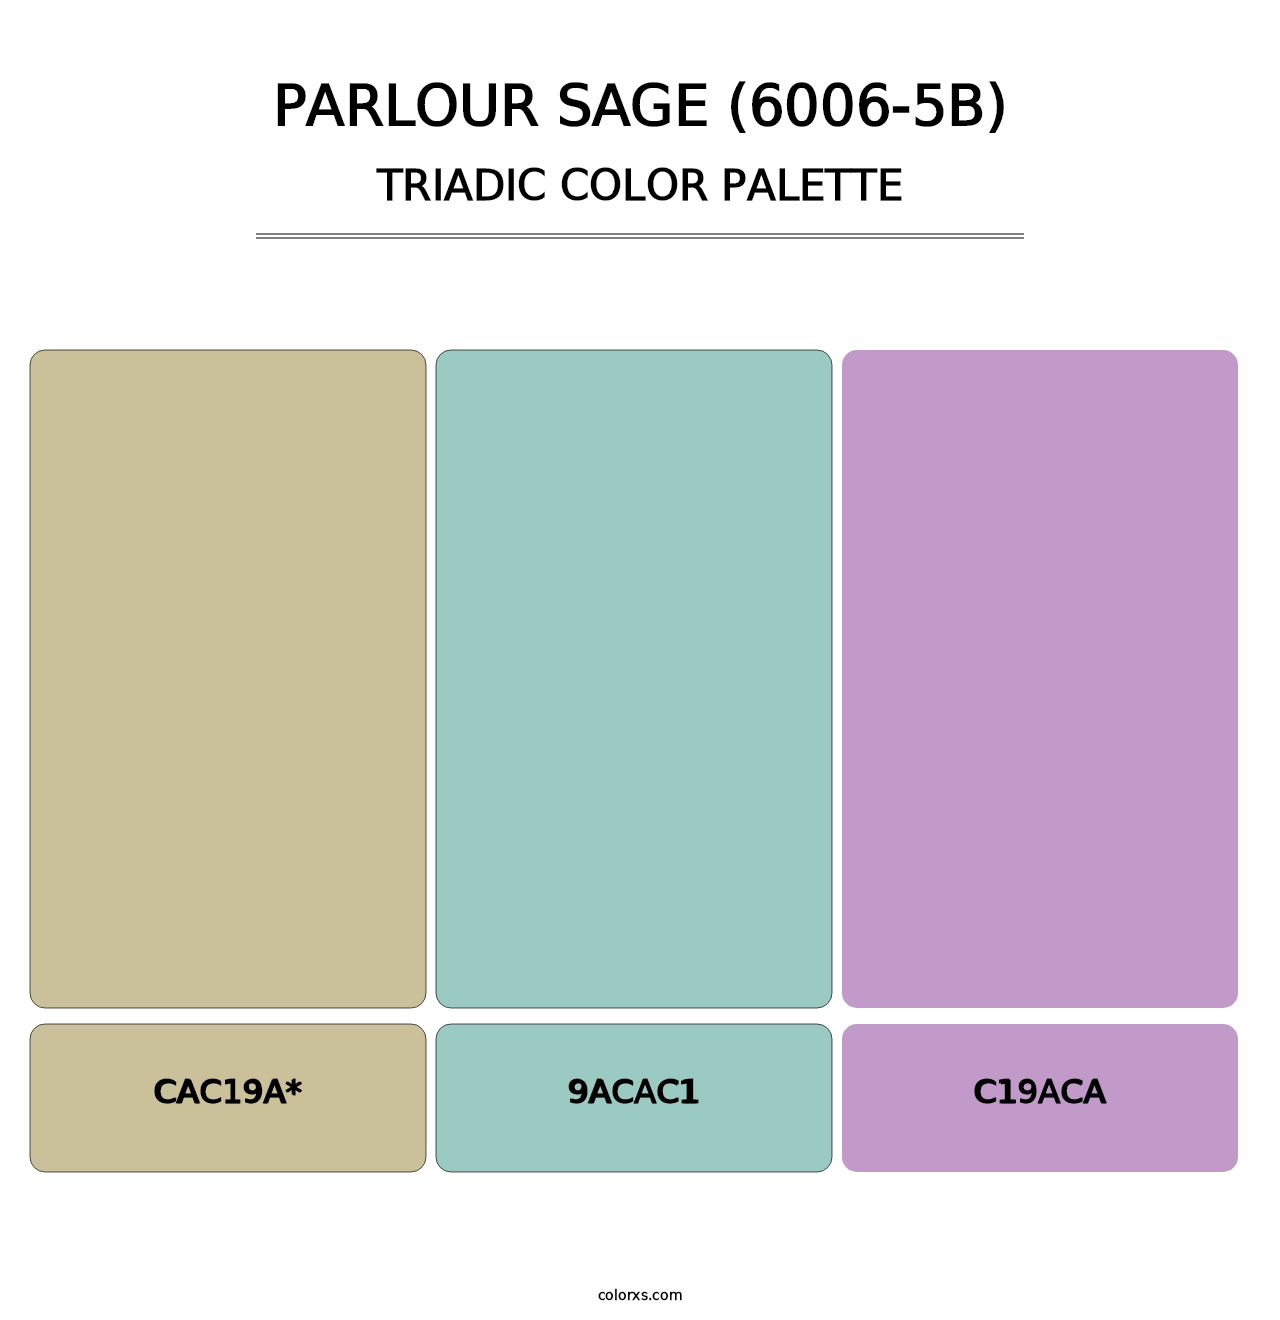 Parlour Sage (6006-5B) - Triadic Color Palette